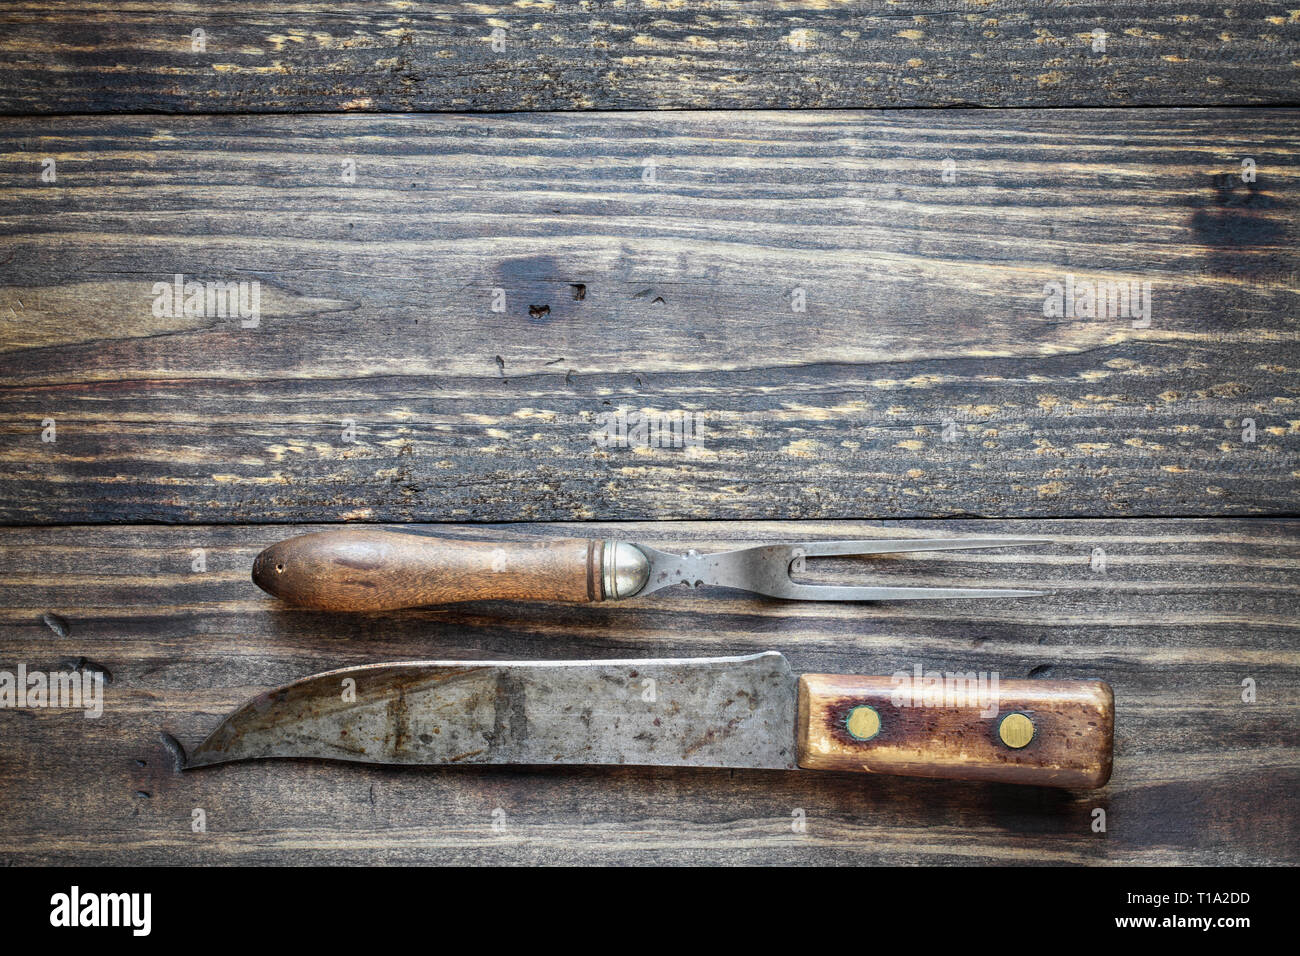 Fourchette à viande antique et Butcher's knife par-dessus une table rustique en bois / arrière-plan. Droit tourné à partir de la vue de dessus. Banque D'Images